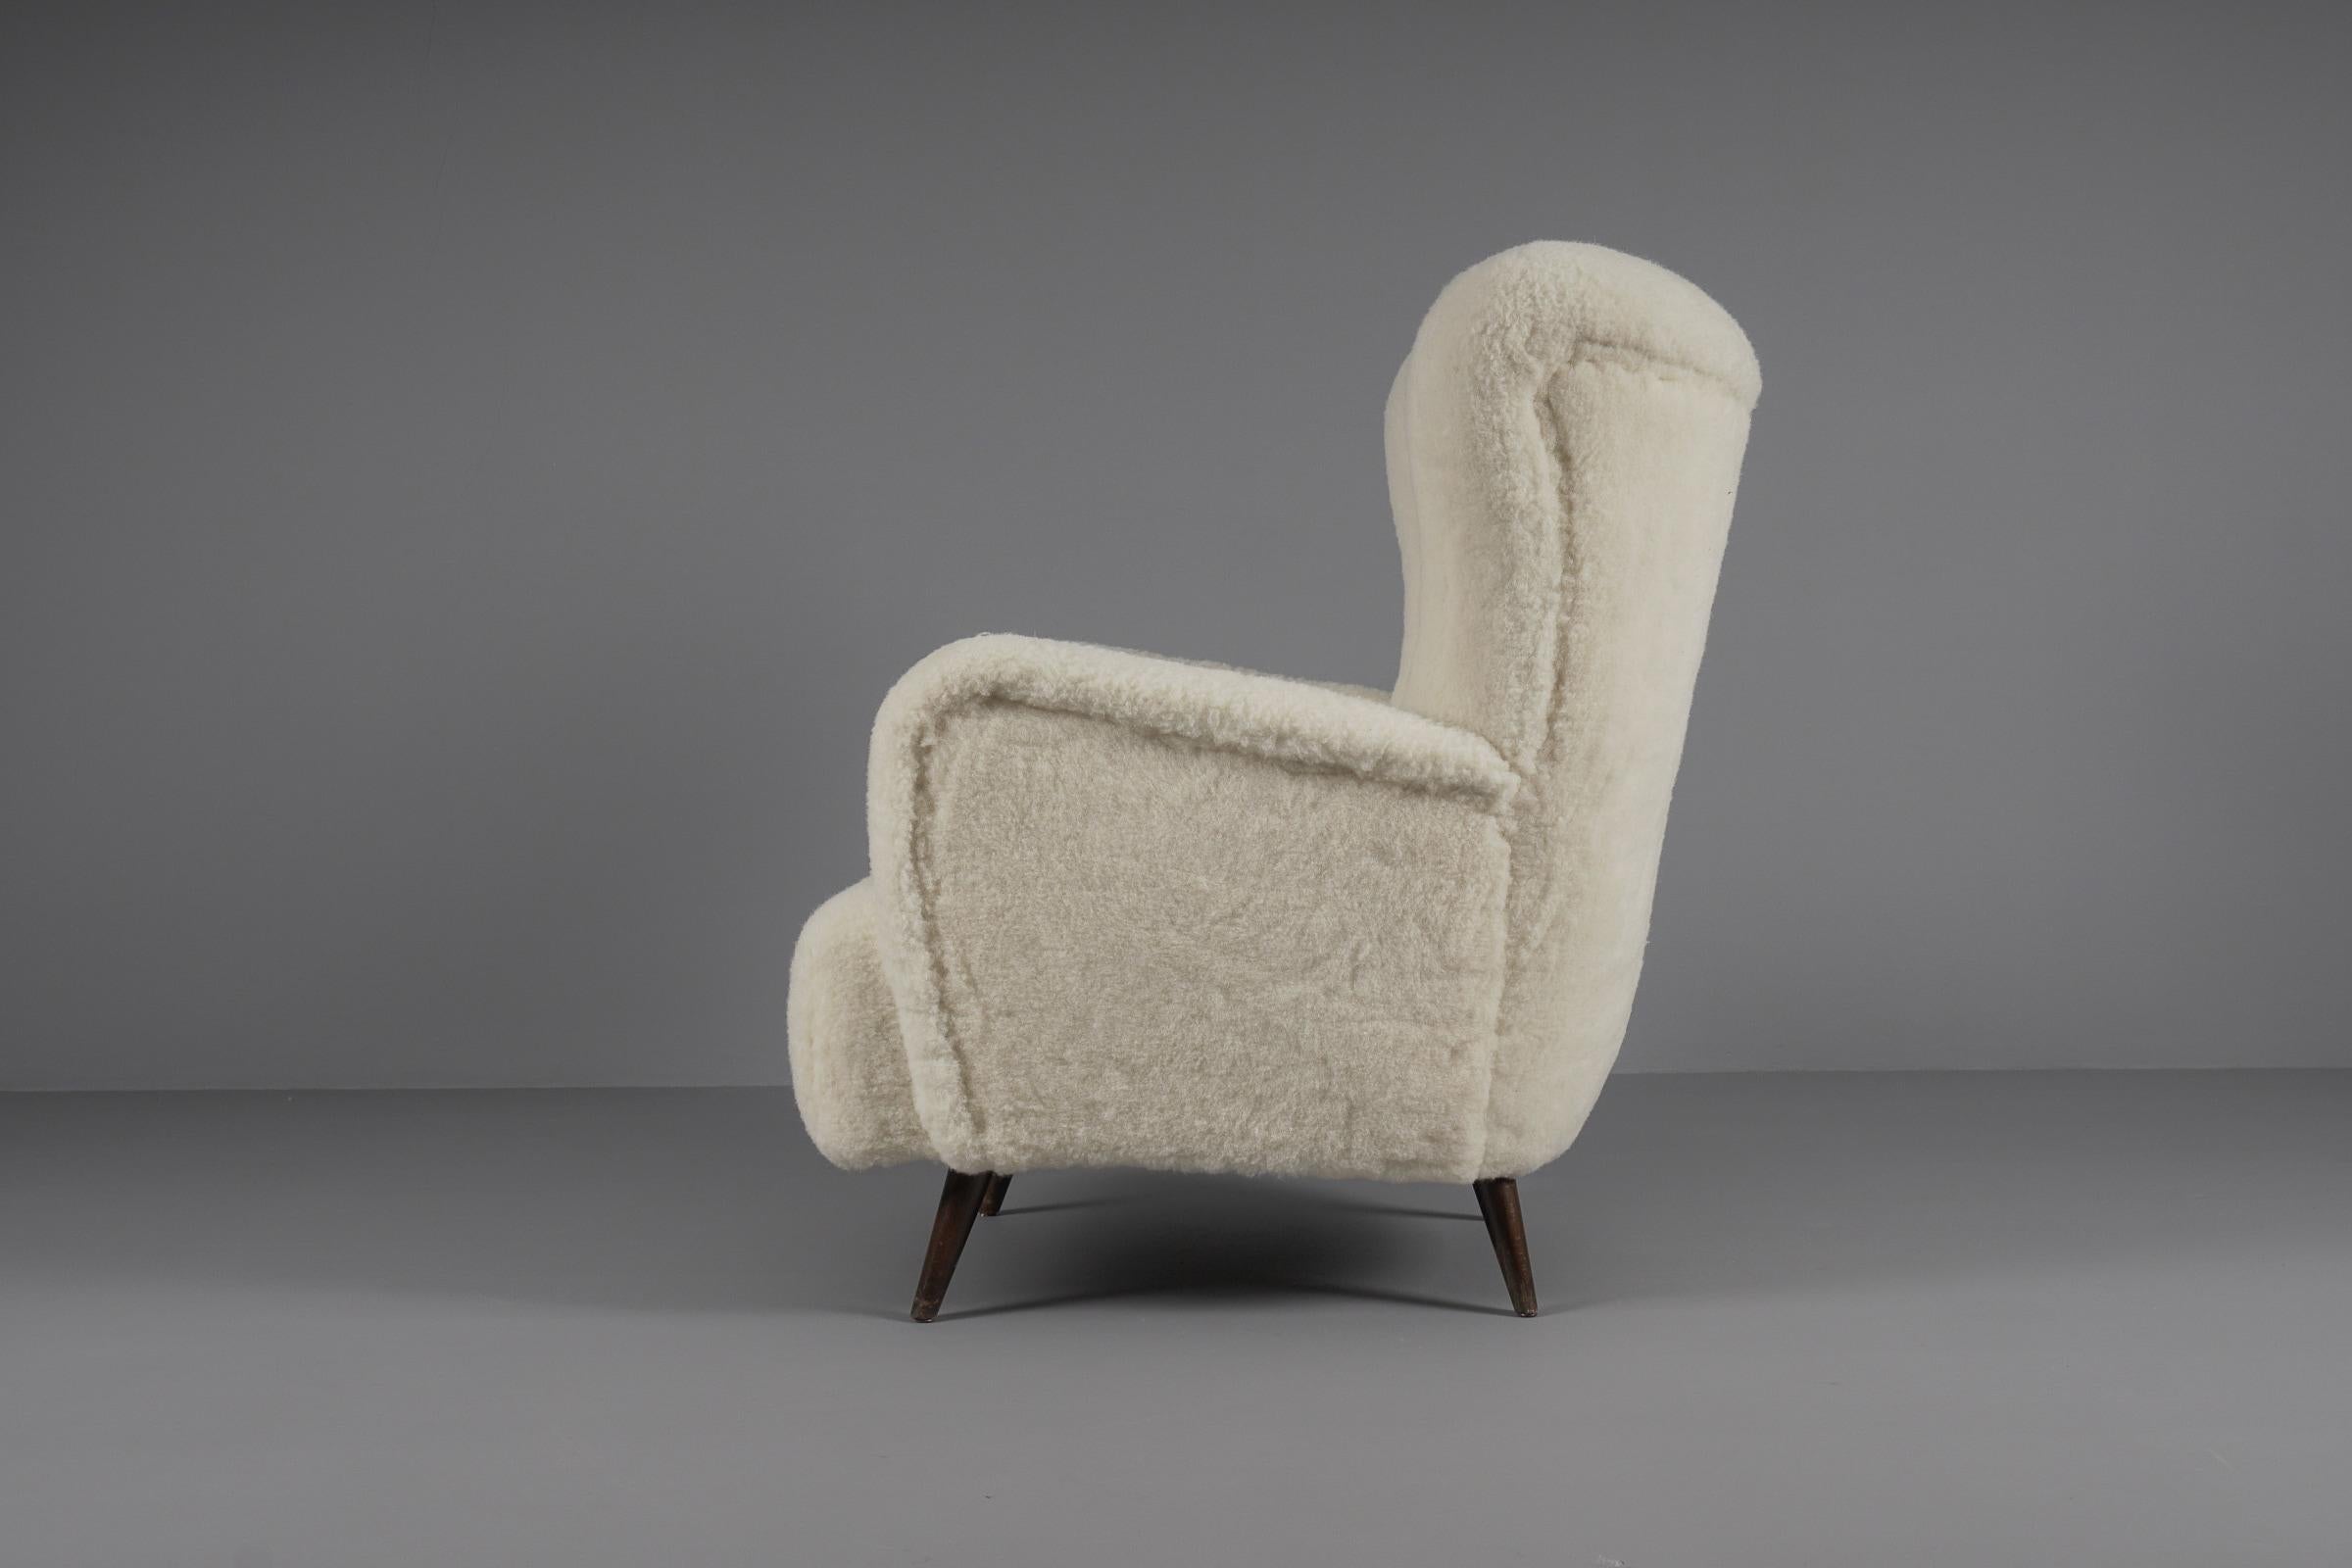 Sheepskin Lovely Mid-Century Modern Wingback Chair in sheepskin wool fabric, 1950s 